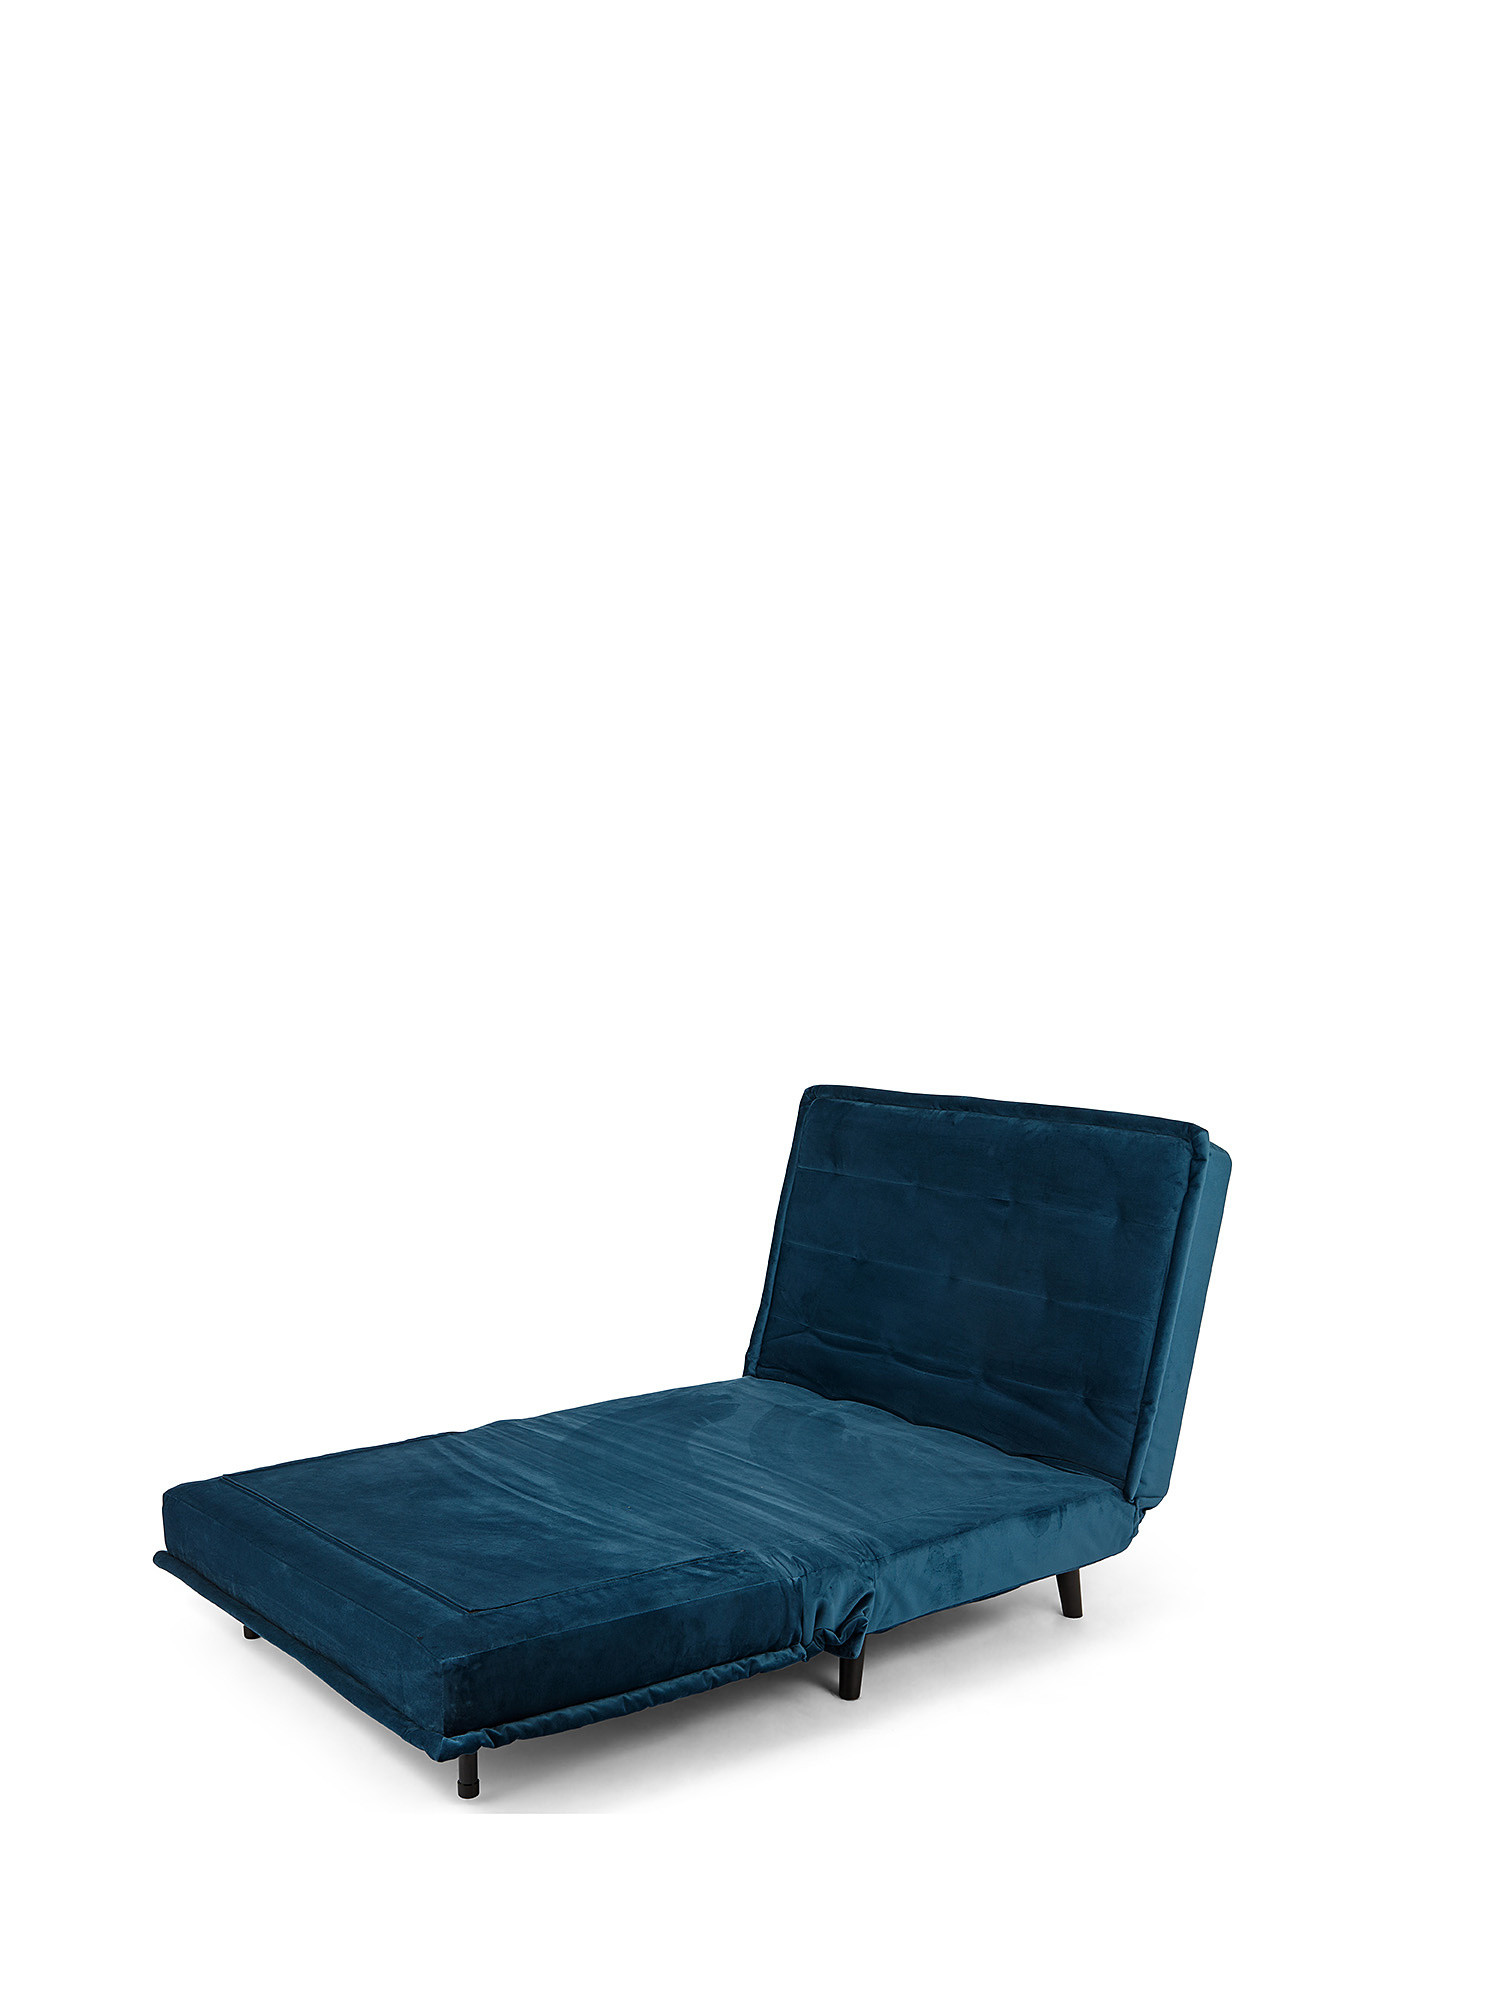 Guest velvet sofa bed, Green, large image number 1